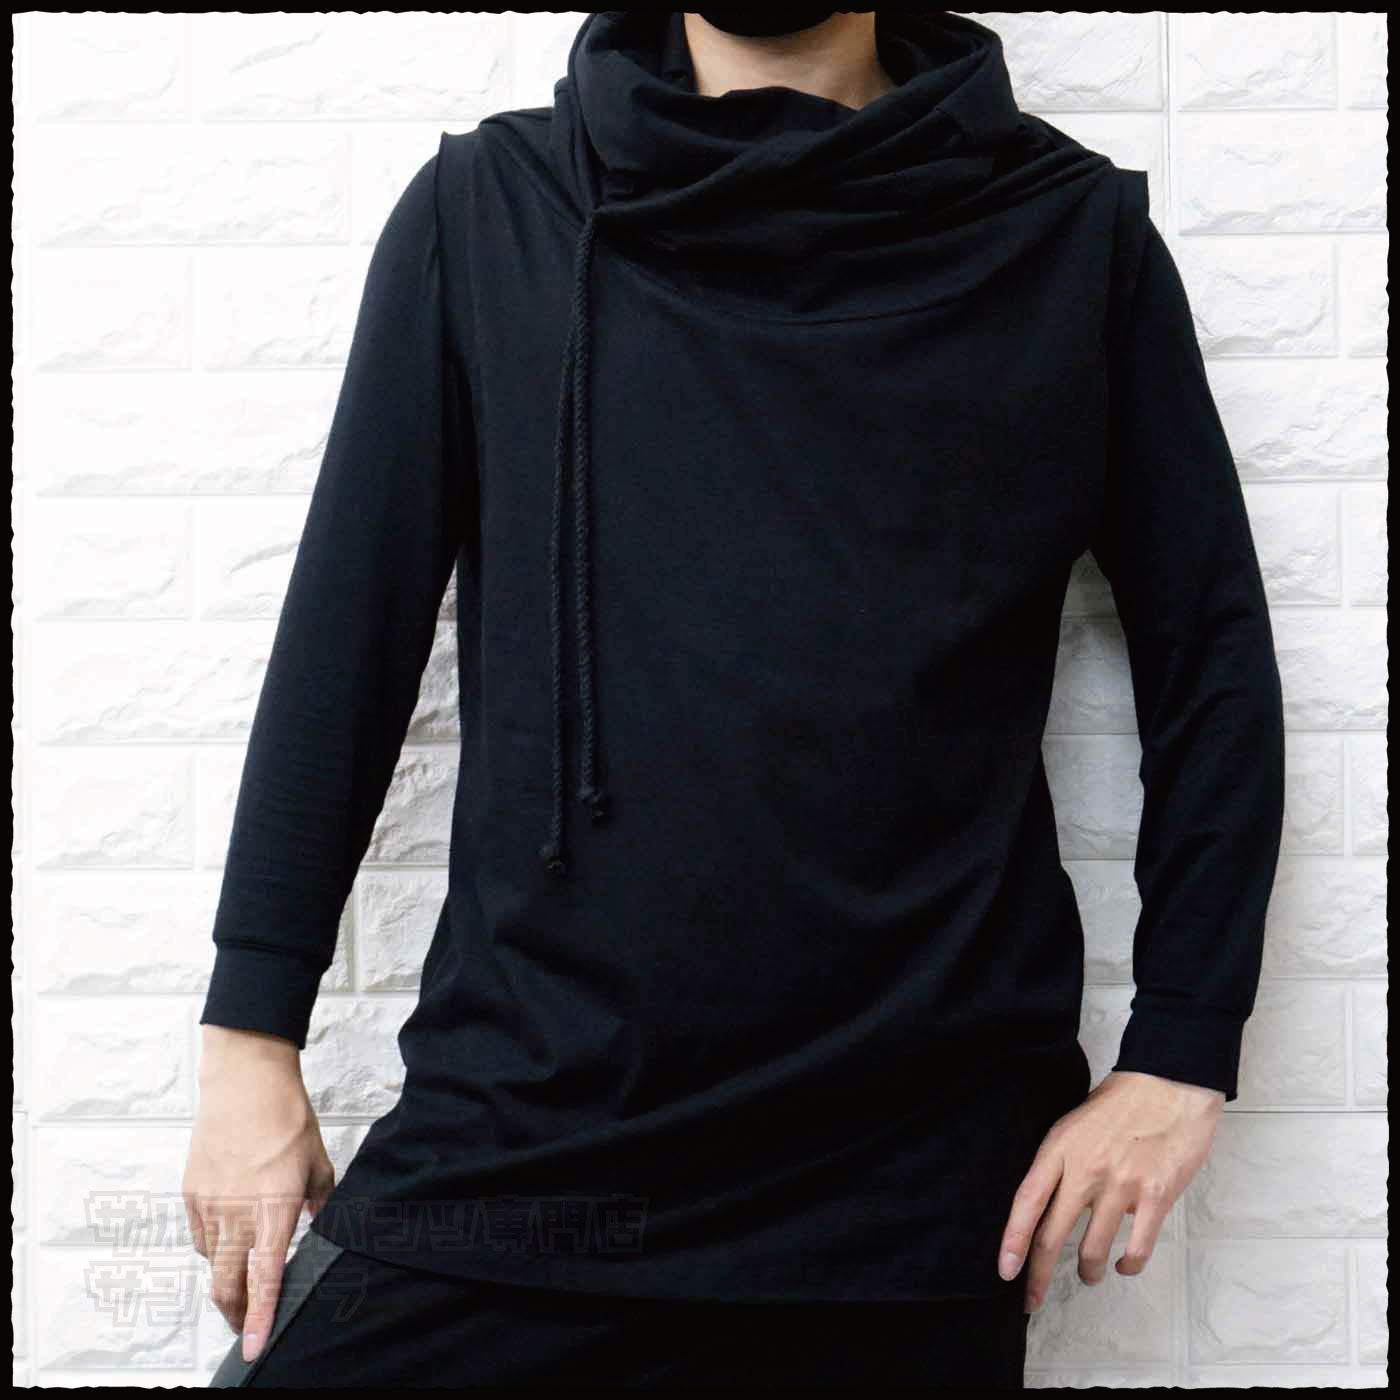 ベスト タンクトップ ノースリーブ Tシャツ メンズ レディース モード系 V系 サロン系 黒 変形アウター 半袖 韓国 ストリート ファッション